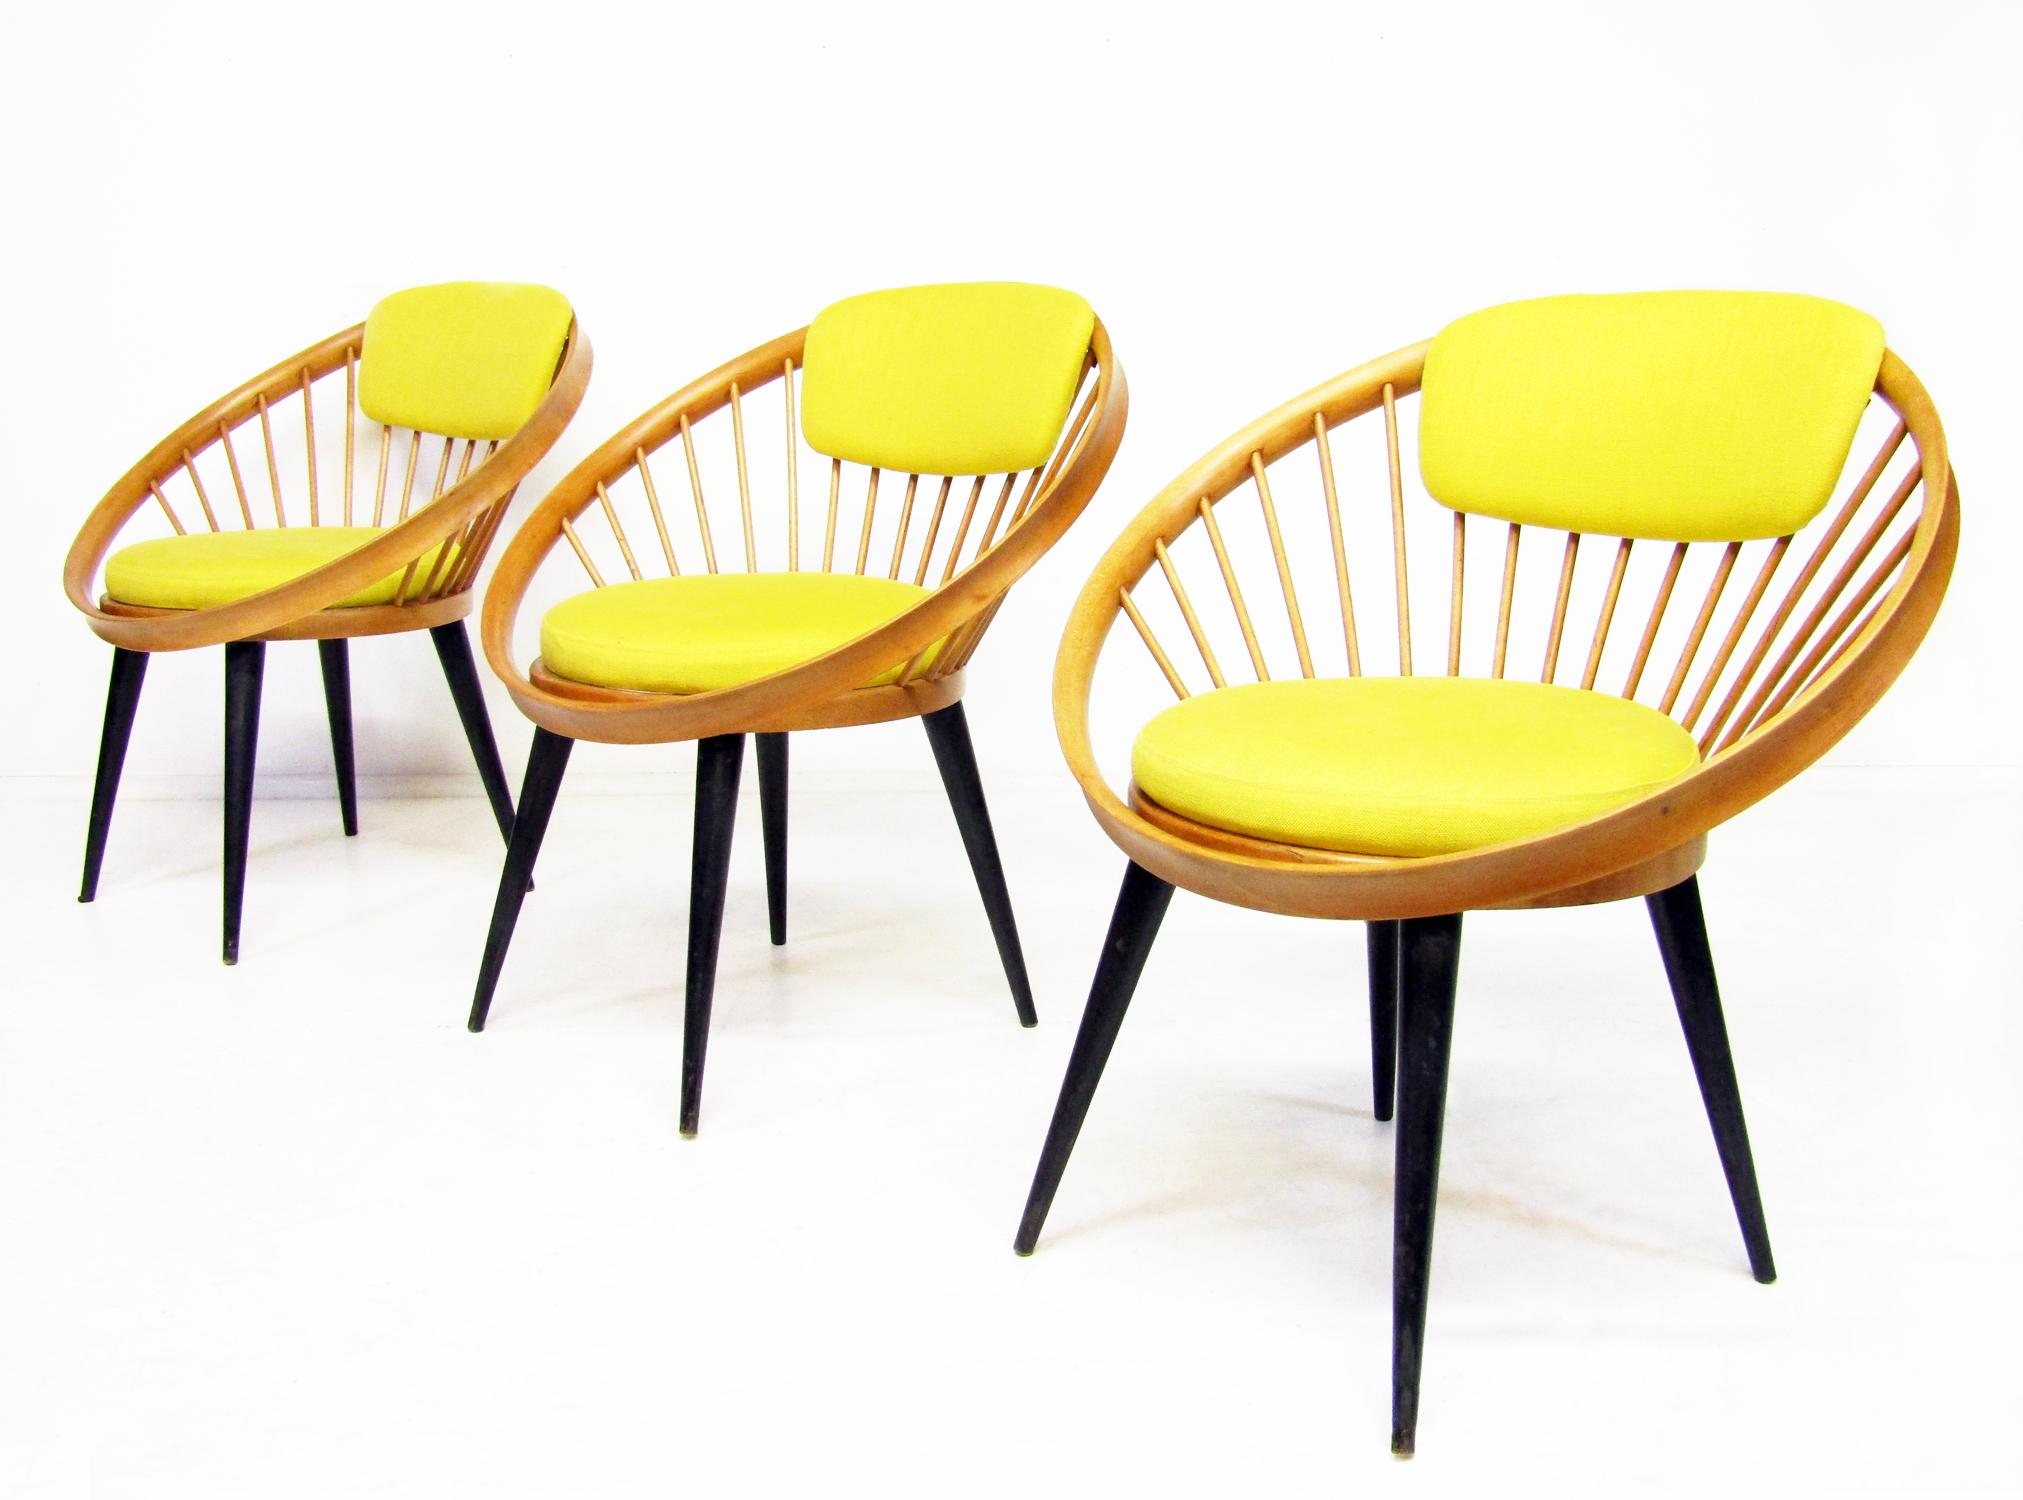 Trois magnifiques chaises Laminett Circle des années 1950 du designer suédois Yngve Ekstrom.

Avec leurs cadres en forme d'arceau sur des pieds effilés, l'assise et le dossier en tissu de lin jaune original, ils résonnent du chic des années